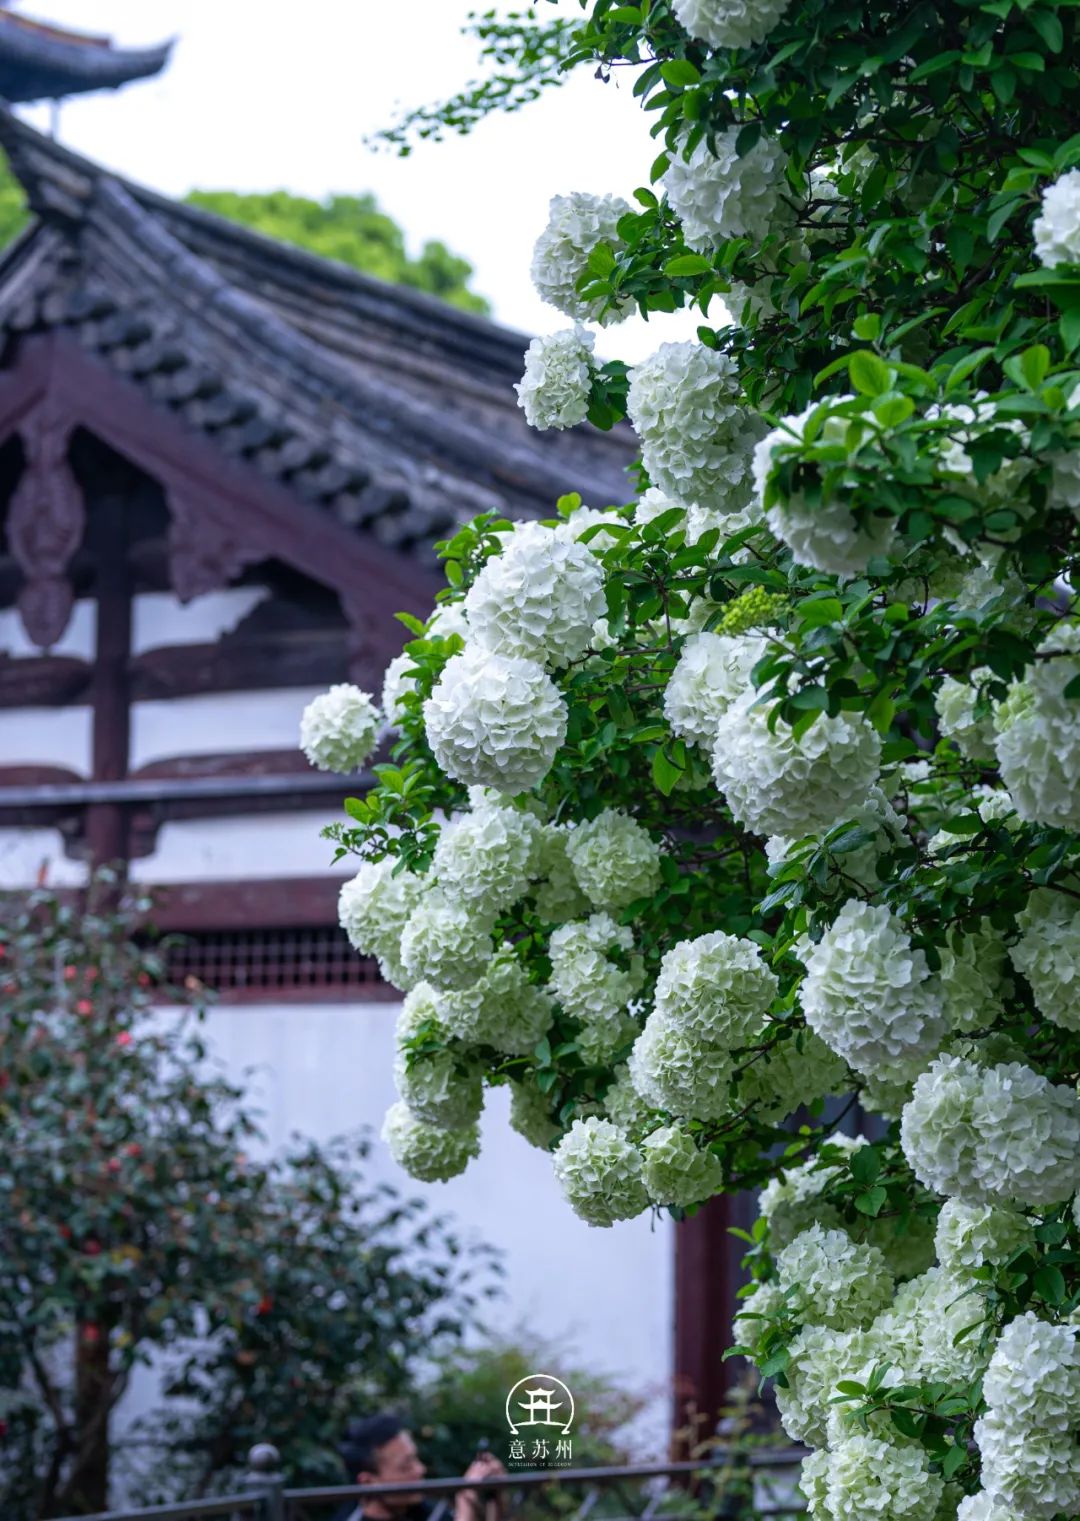 Tô Châu mùa hoa mộc tú cầu: Cả thành phố khoác lên tấm áo cầu hoa trắng tinh khôi, đứng đâu cũng có ảnh đẹp- Ảnh 3.